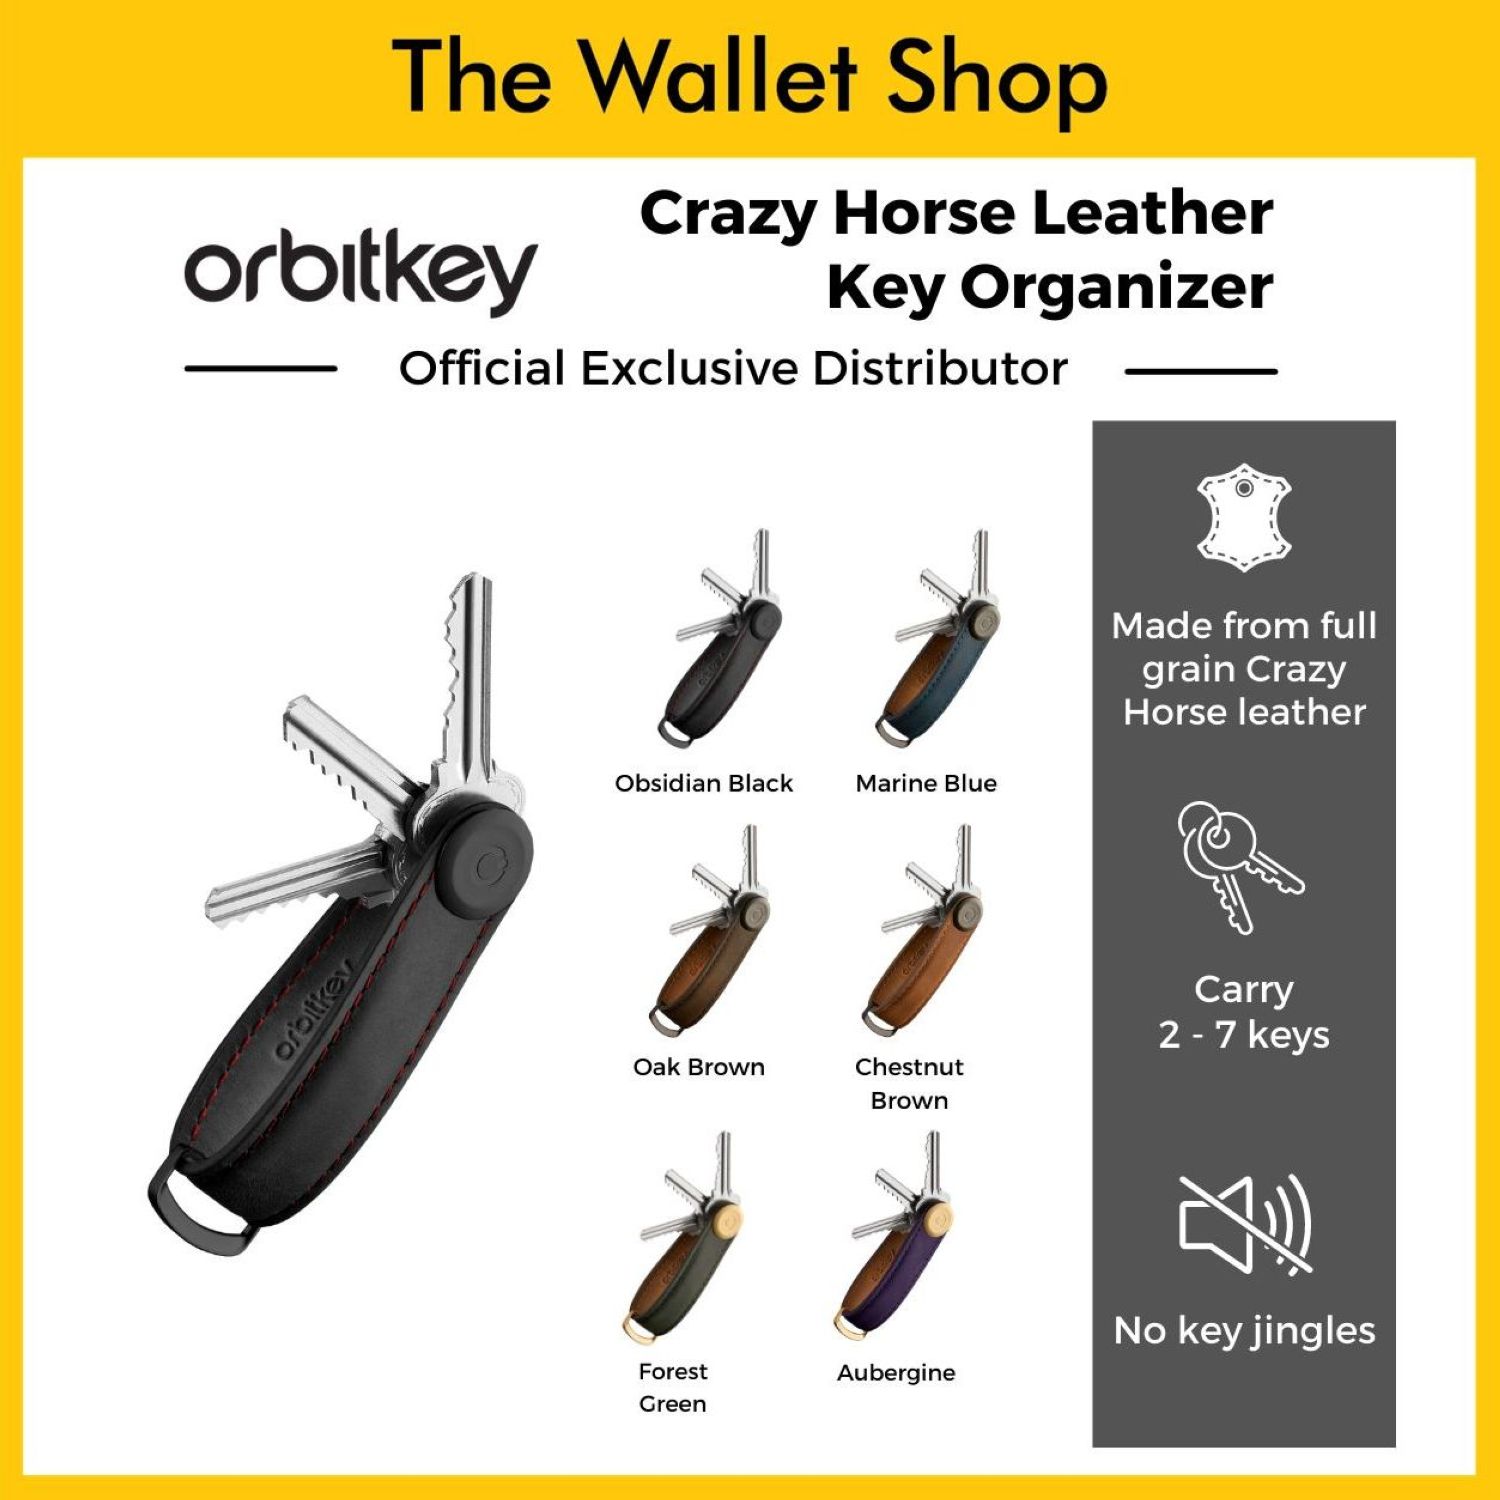 Orbitkey 2.0 Key Organizer, Crazy Horse